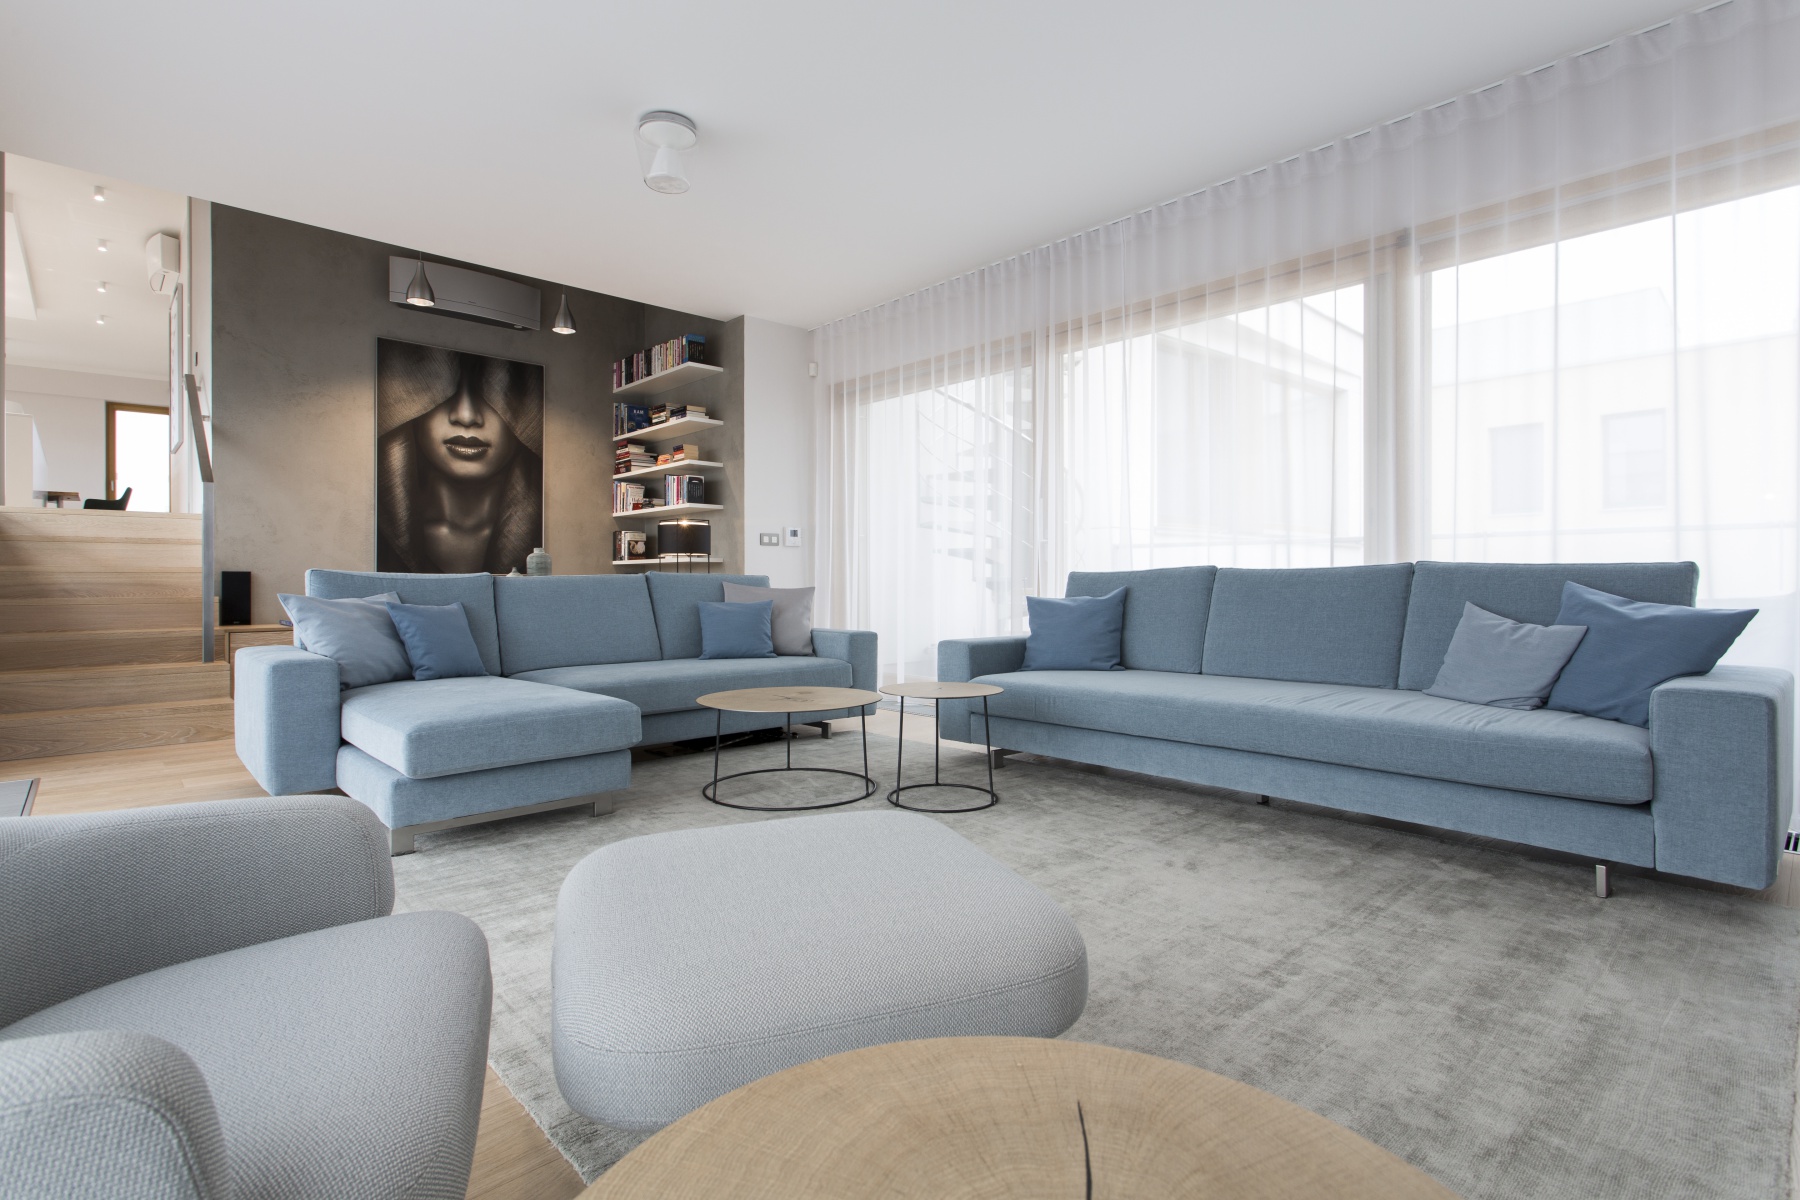 Obývací pokoj s modrou sedačkou a velkým oknem - Ambience Design.cz